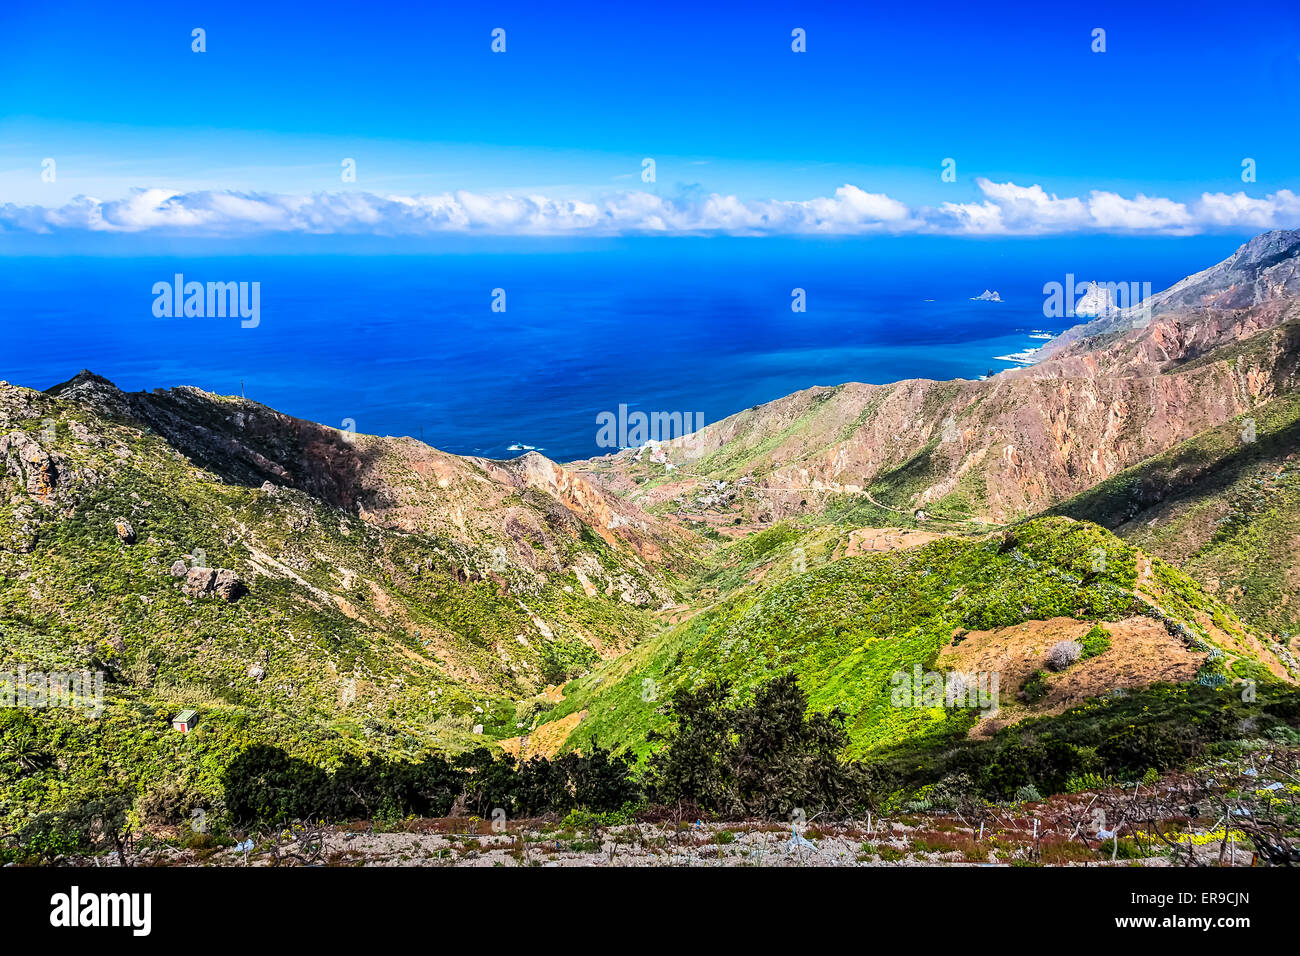 L'autre rive de l'océan Atlantique ou sur la montagne ou le rock et le ciel avec les nuages et la ligne d'horizon dans l'île de Ténérife, Espagne Banque D'Images